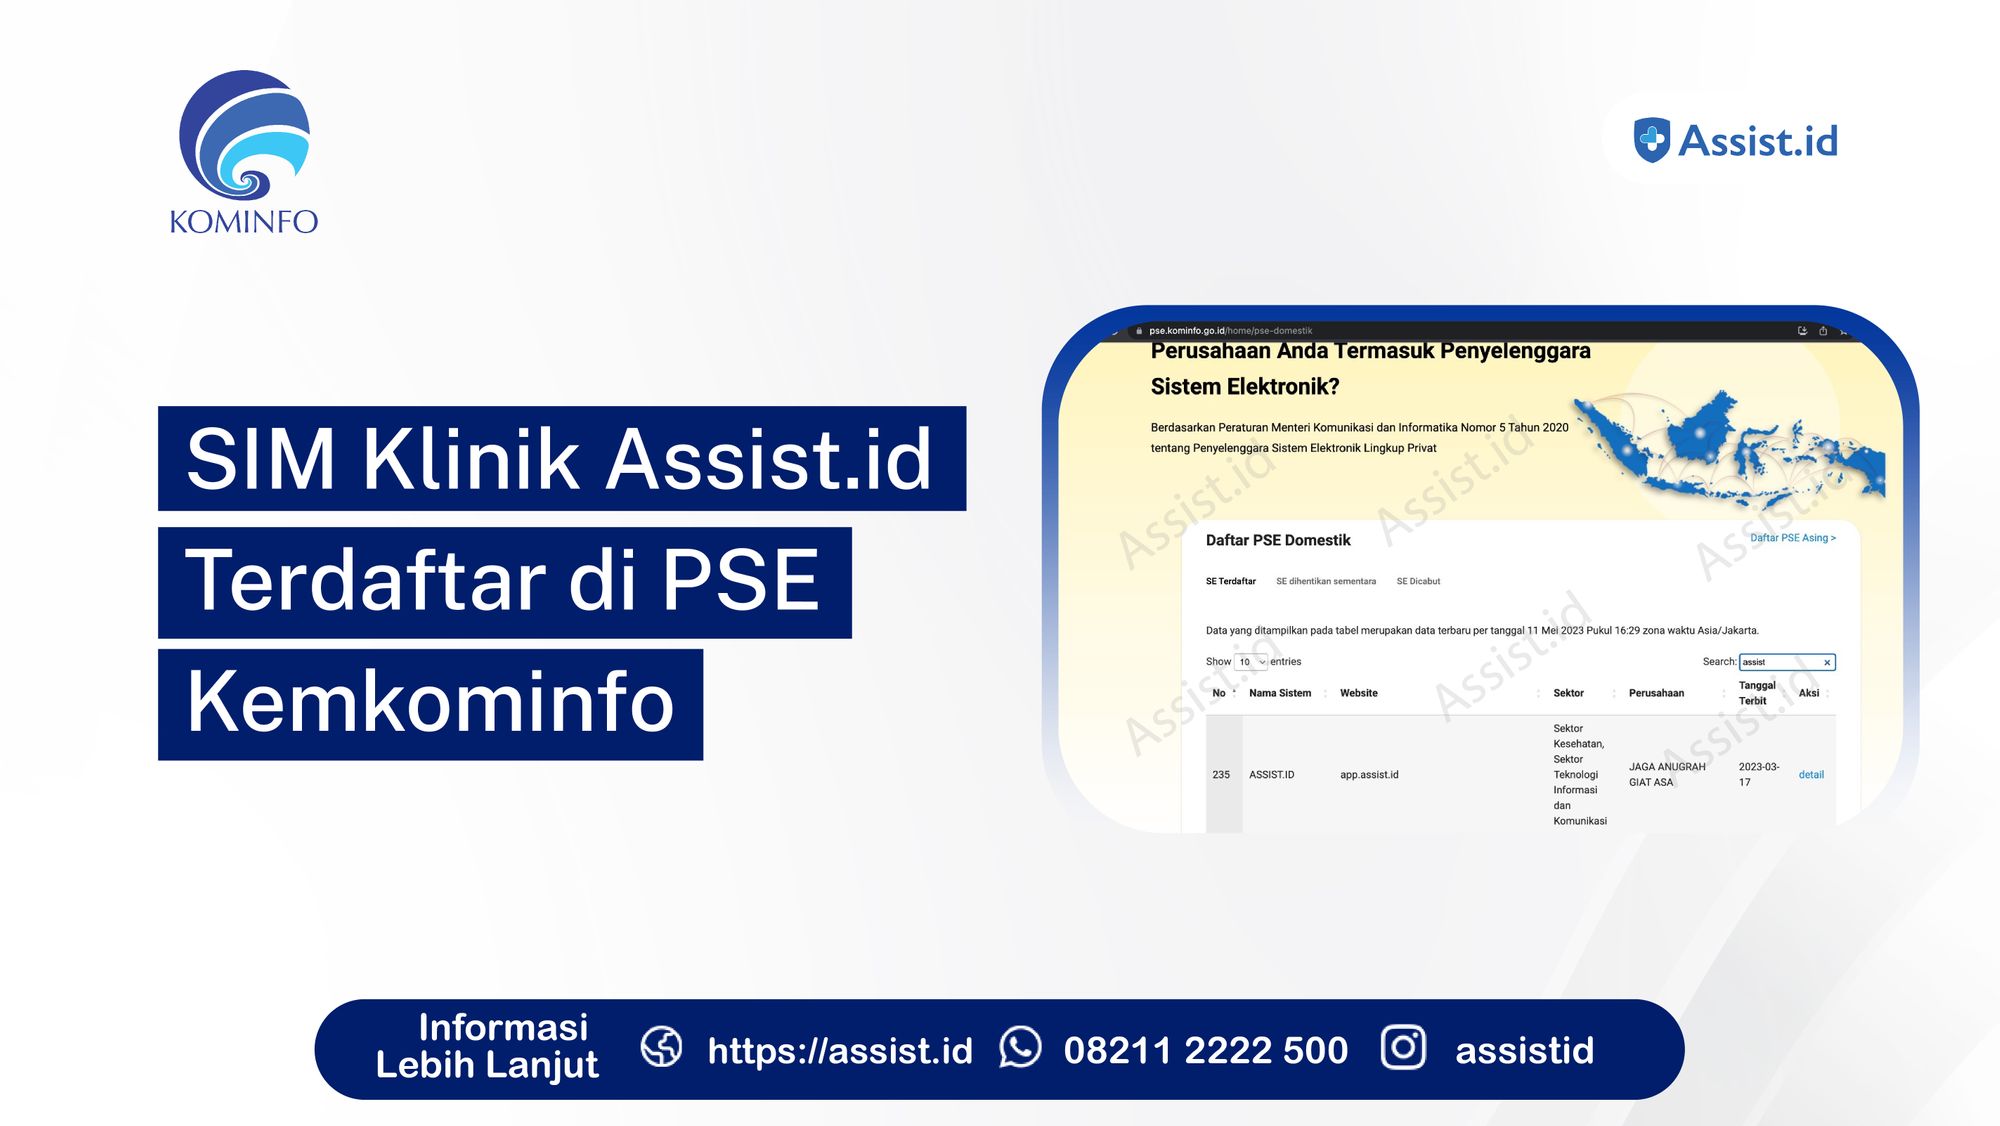 SIM Klinik Assist.id Terdaftar di PSE Kemkominfo